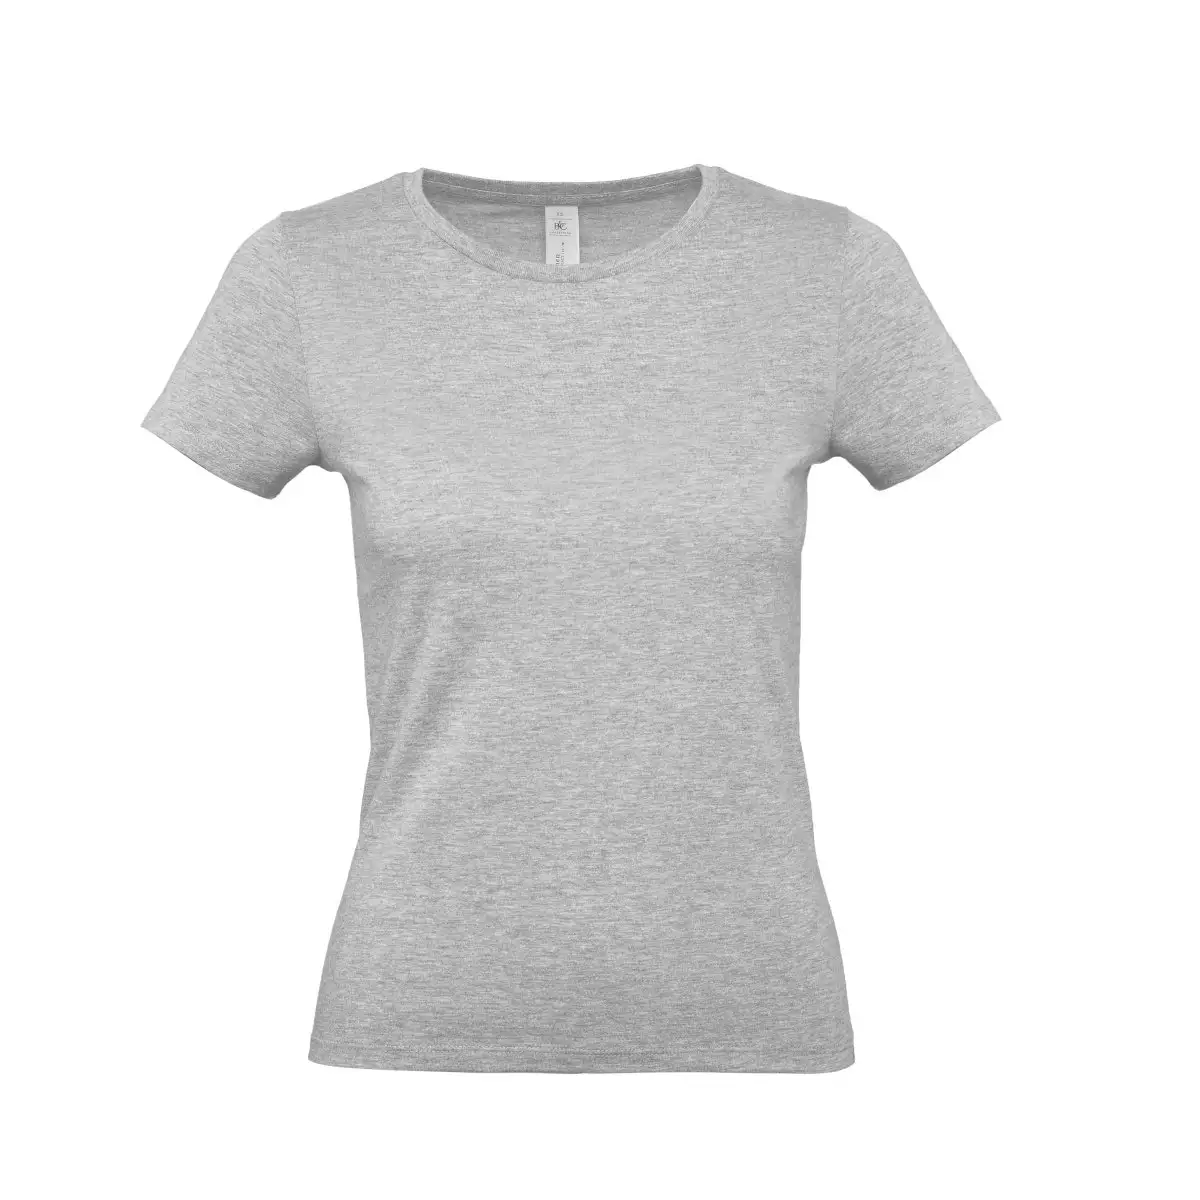 T-Shirt Manica Corta Donna Personalizzata - B&C Collection